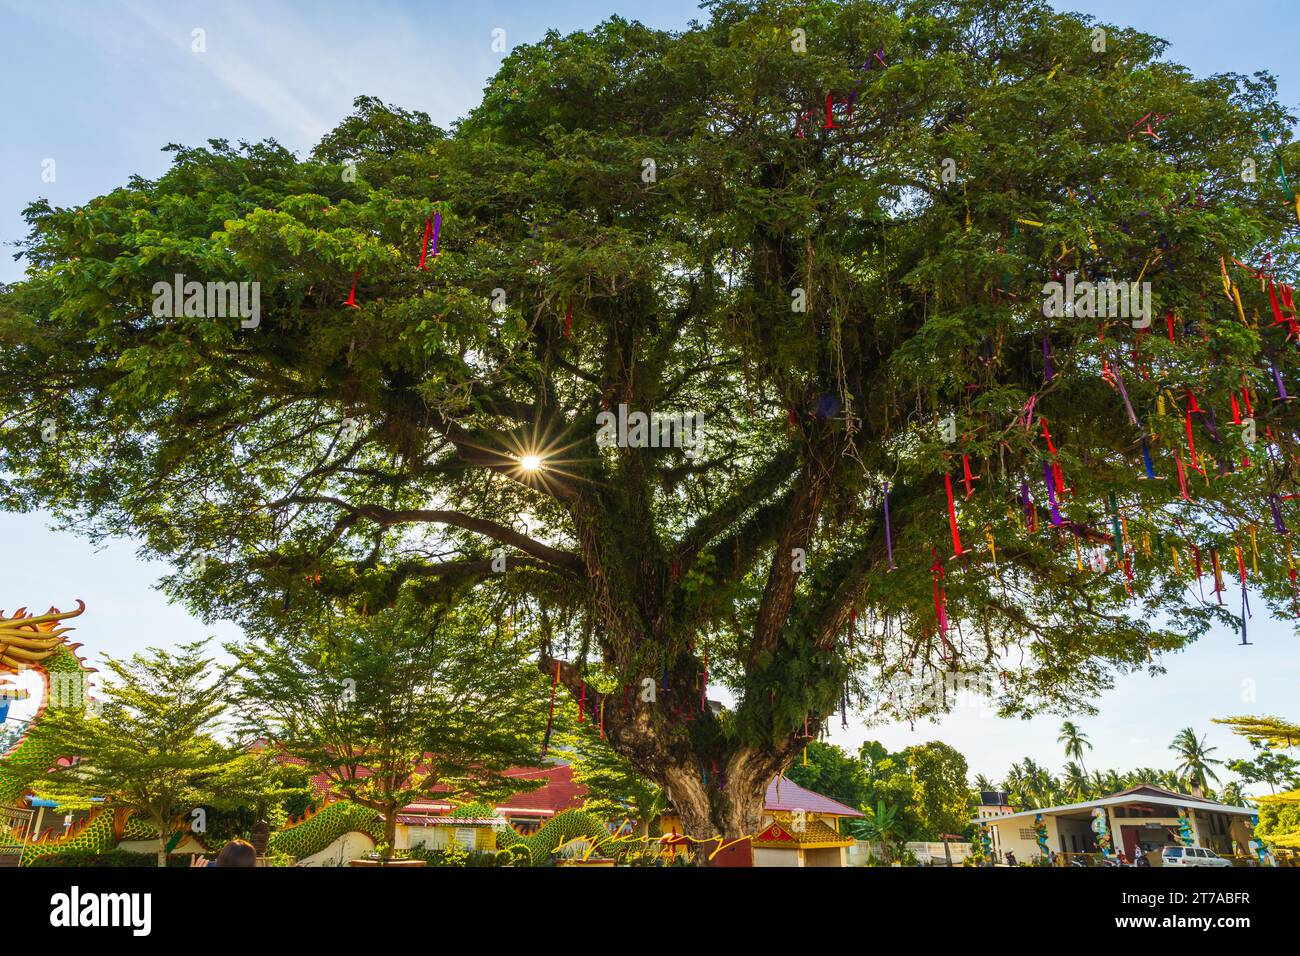 L'arbre souhaitant pour accomplir les prières des visiteurs du temple, ils attachent les rubans colorés sur les branches de l'arbre après leur prière. Banque D'Images